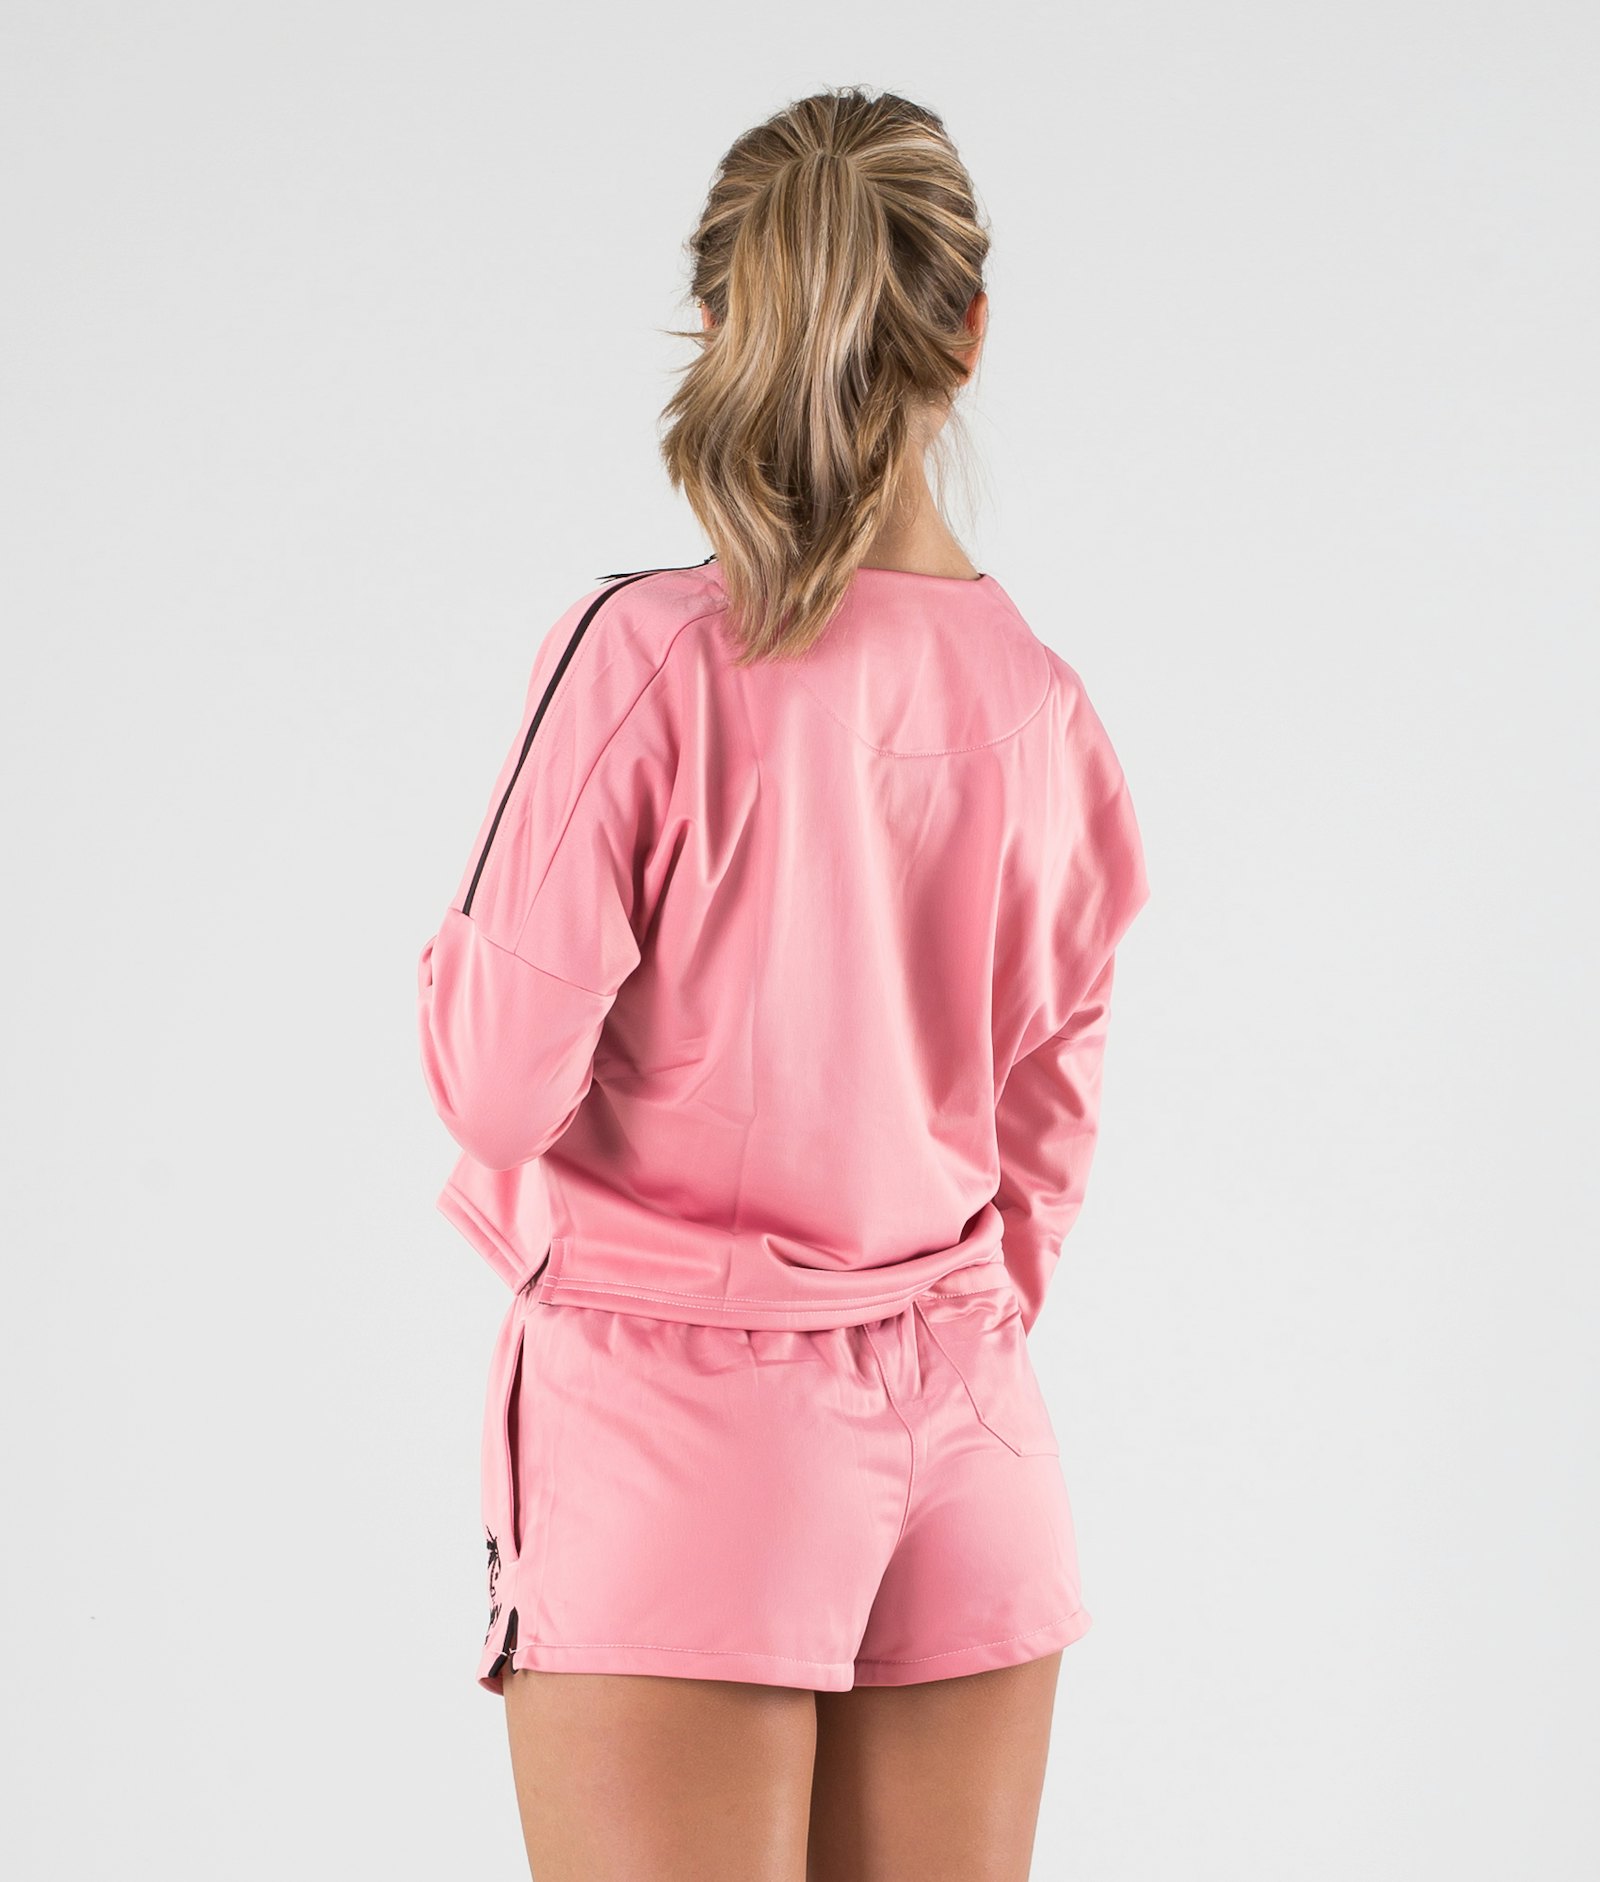 Dope Roamer Sweater Women Pink